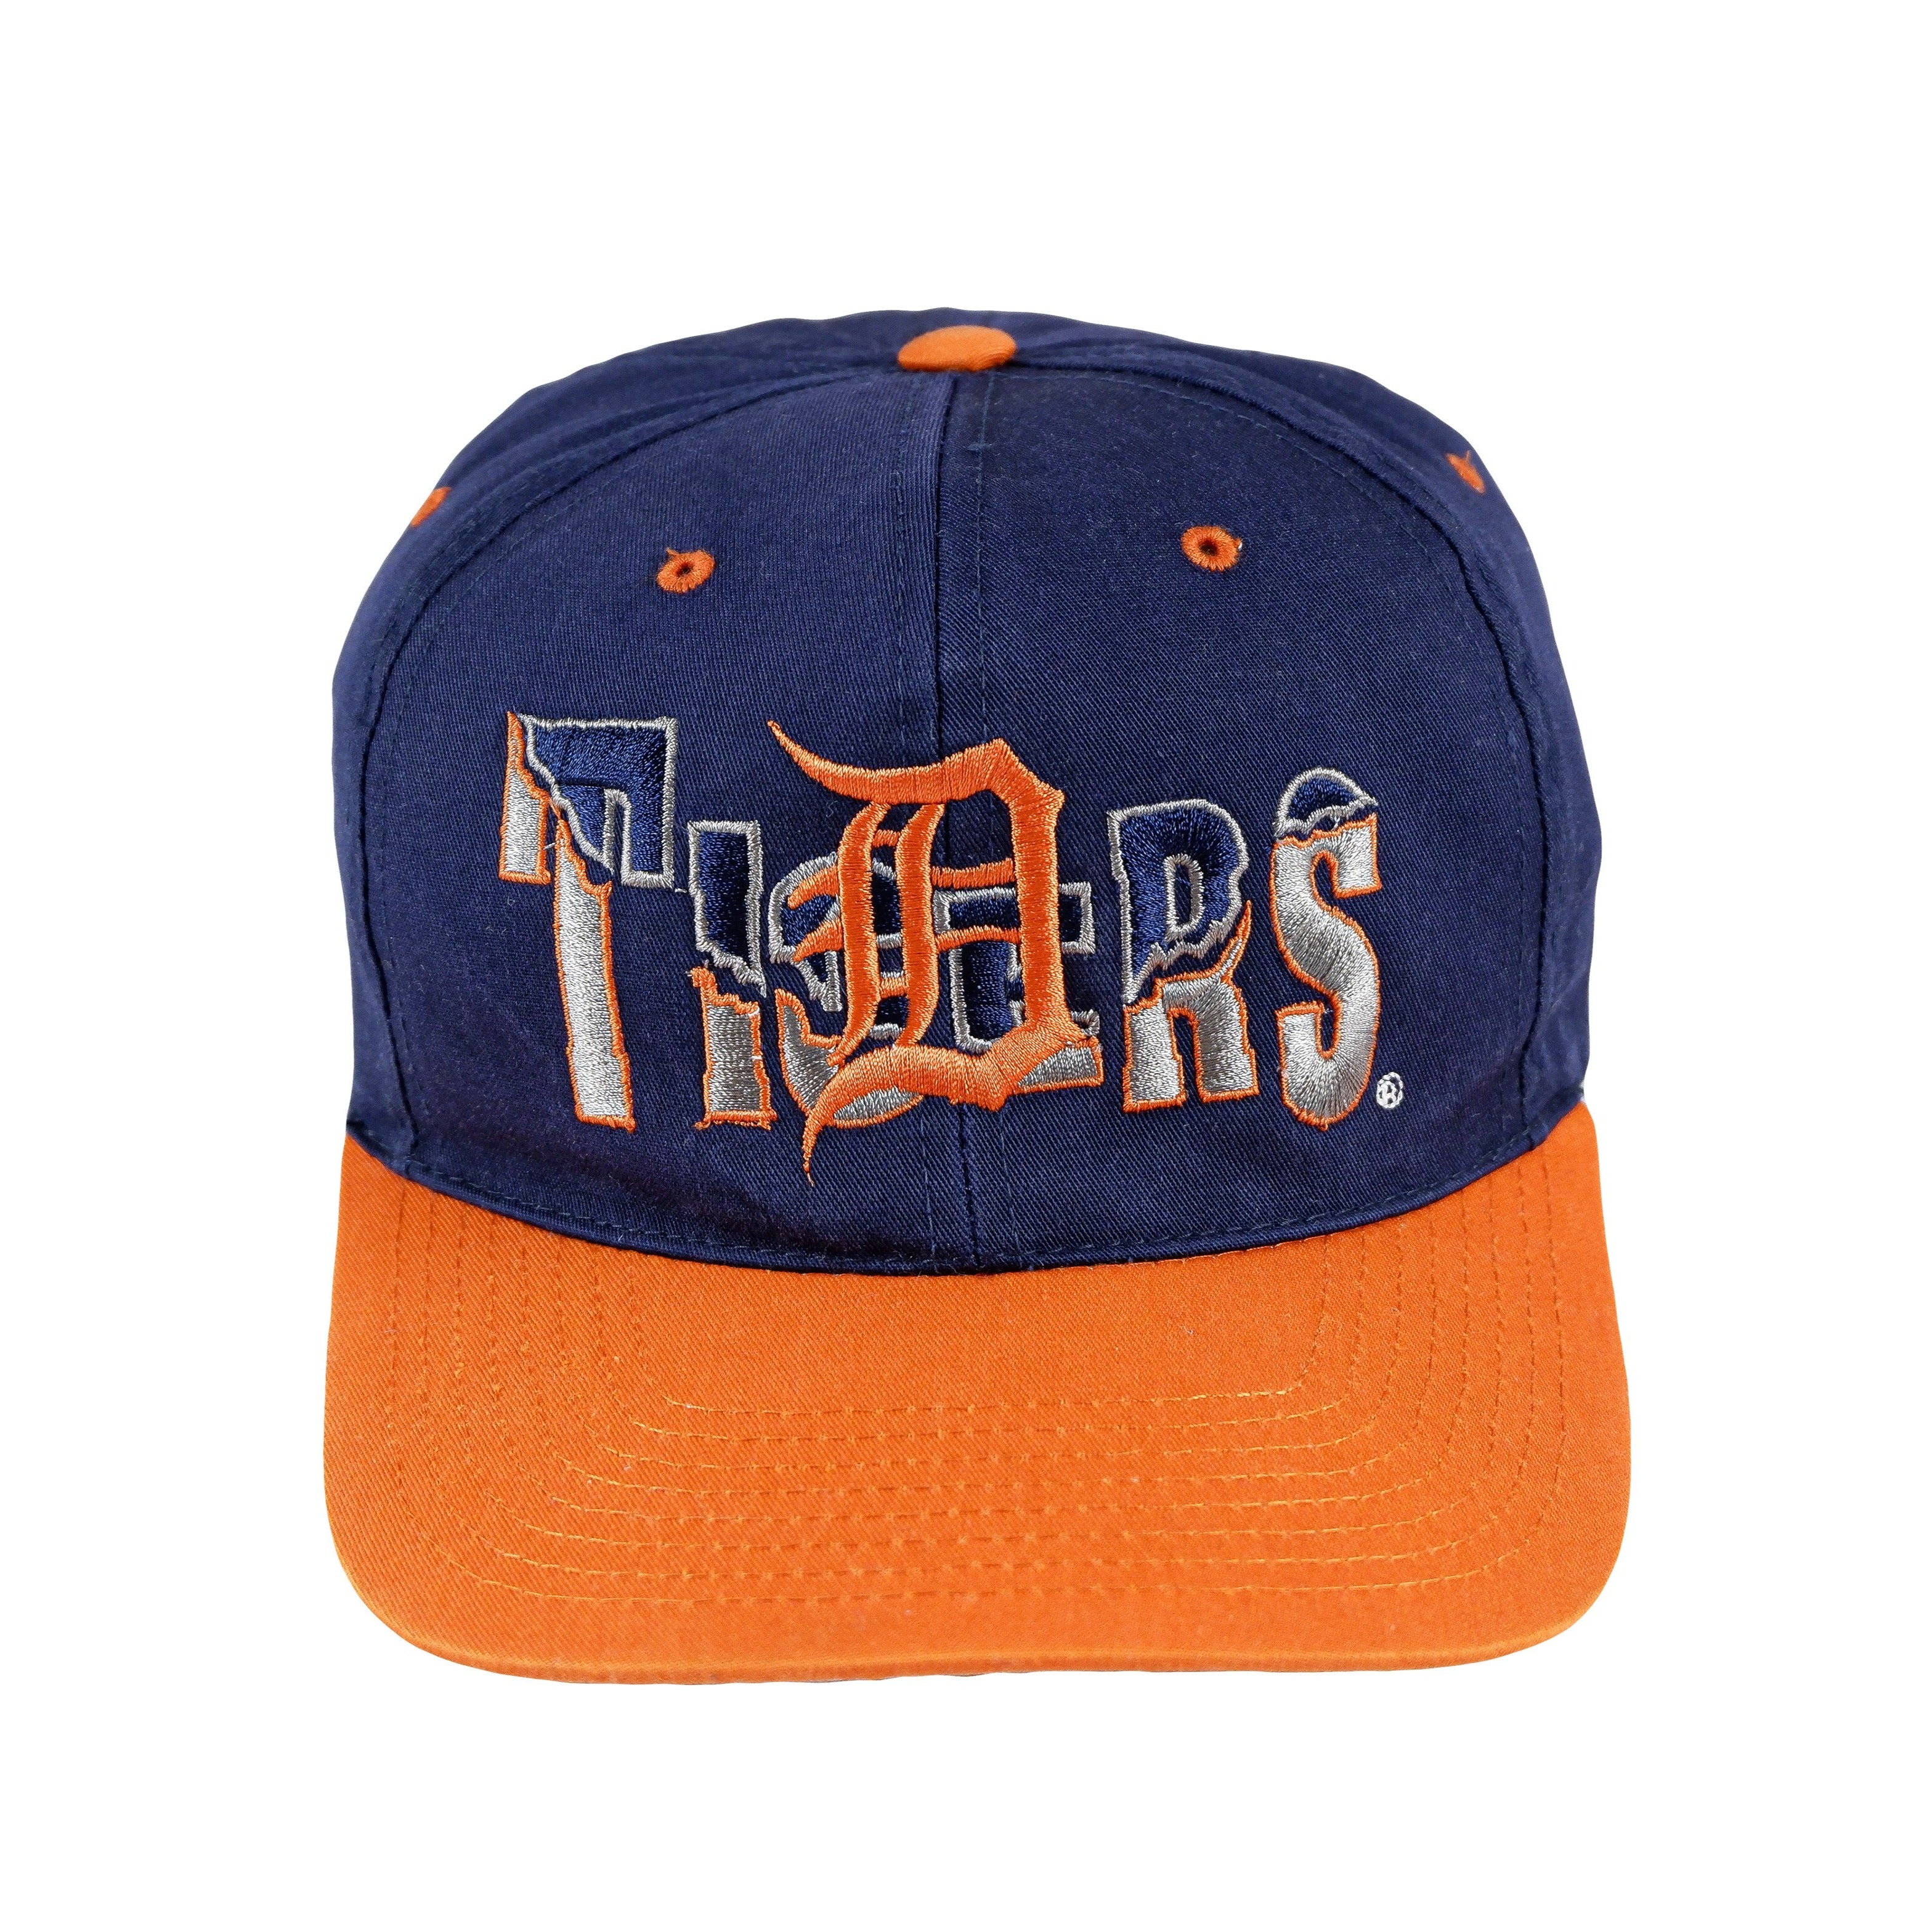 VINTAGE Detroit Tigers Hat Cap Adjustable Red Grosscap MLB Baseball Adult  90s